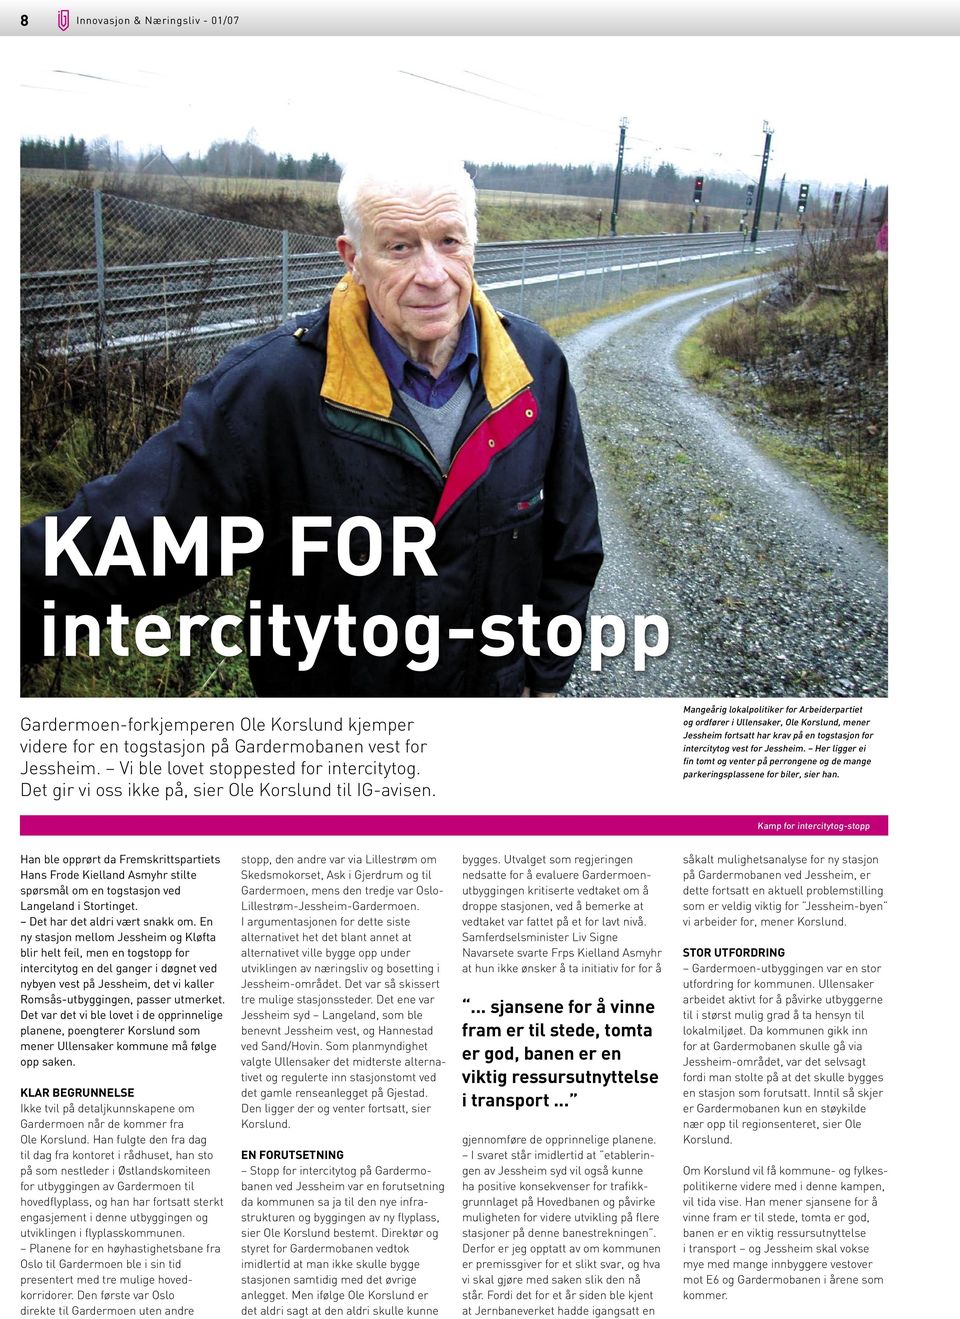 Mangeårig lokalpolitiker for Arbeiderpartiet og ordfører i Ullensaker, Ole Korslund, mener Jessheim fortsatt har krav på en togstasjon for intercitytog vest for Jessheim.